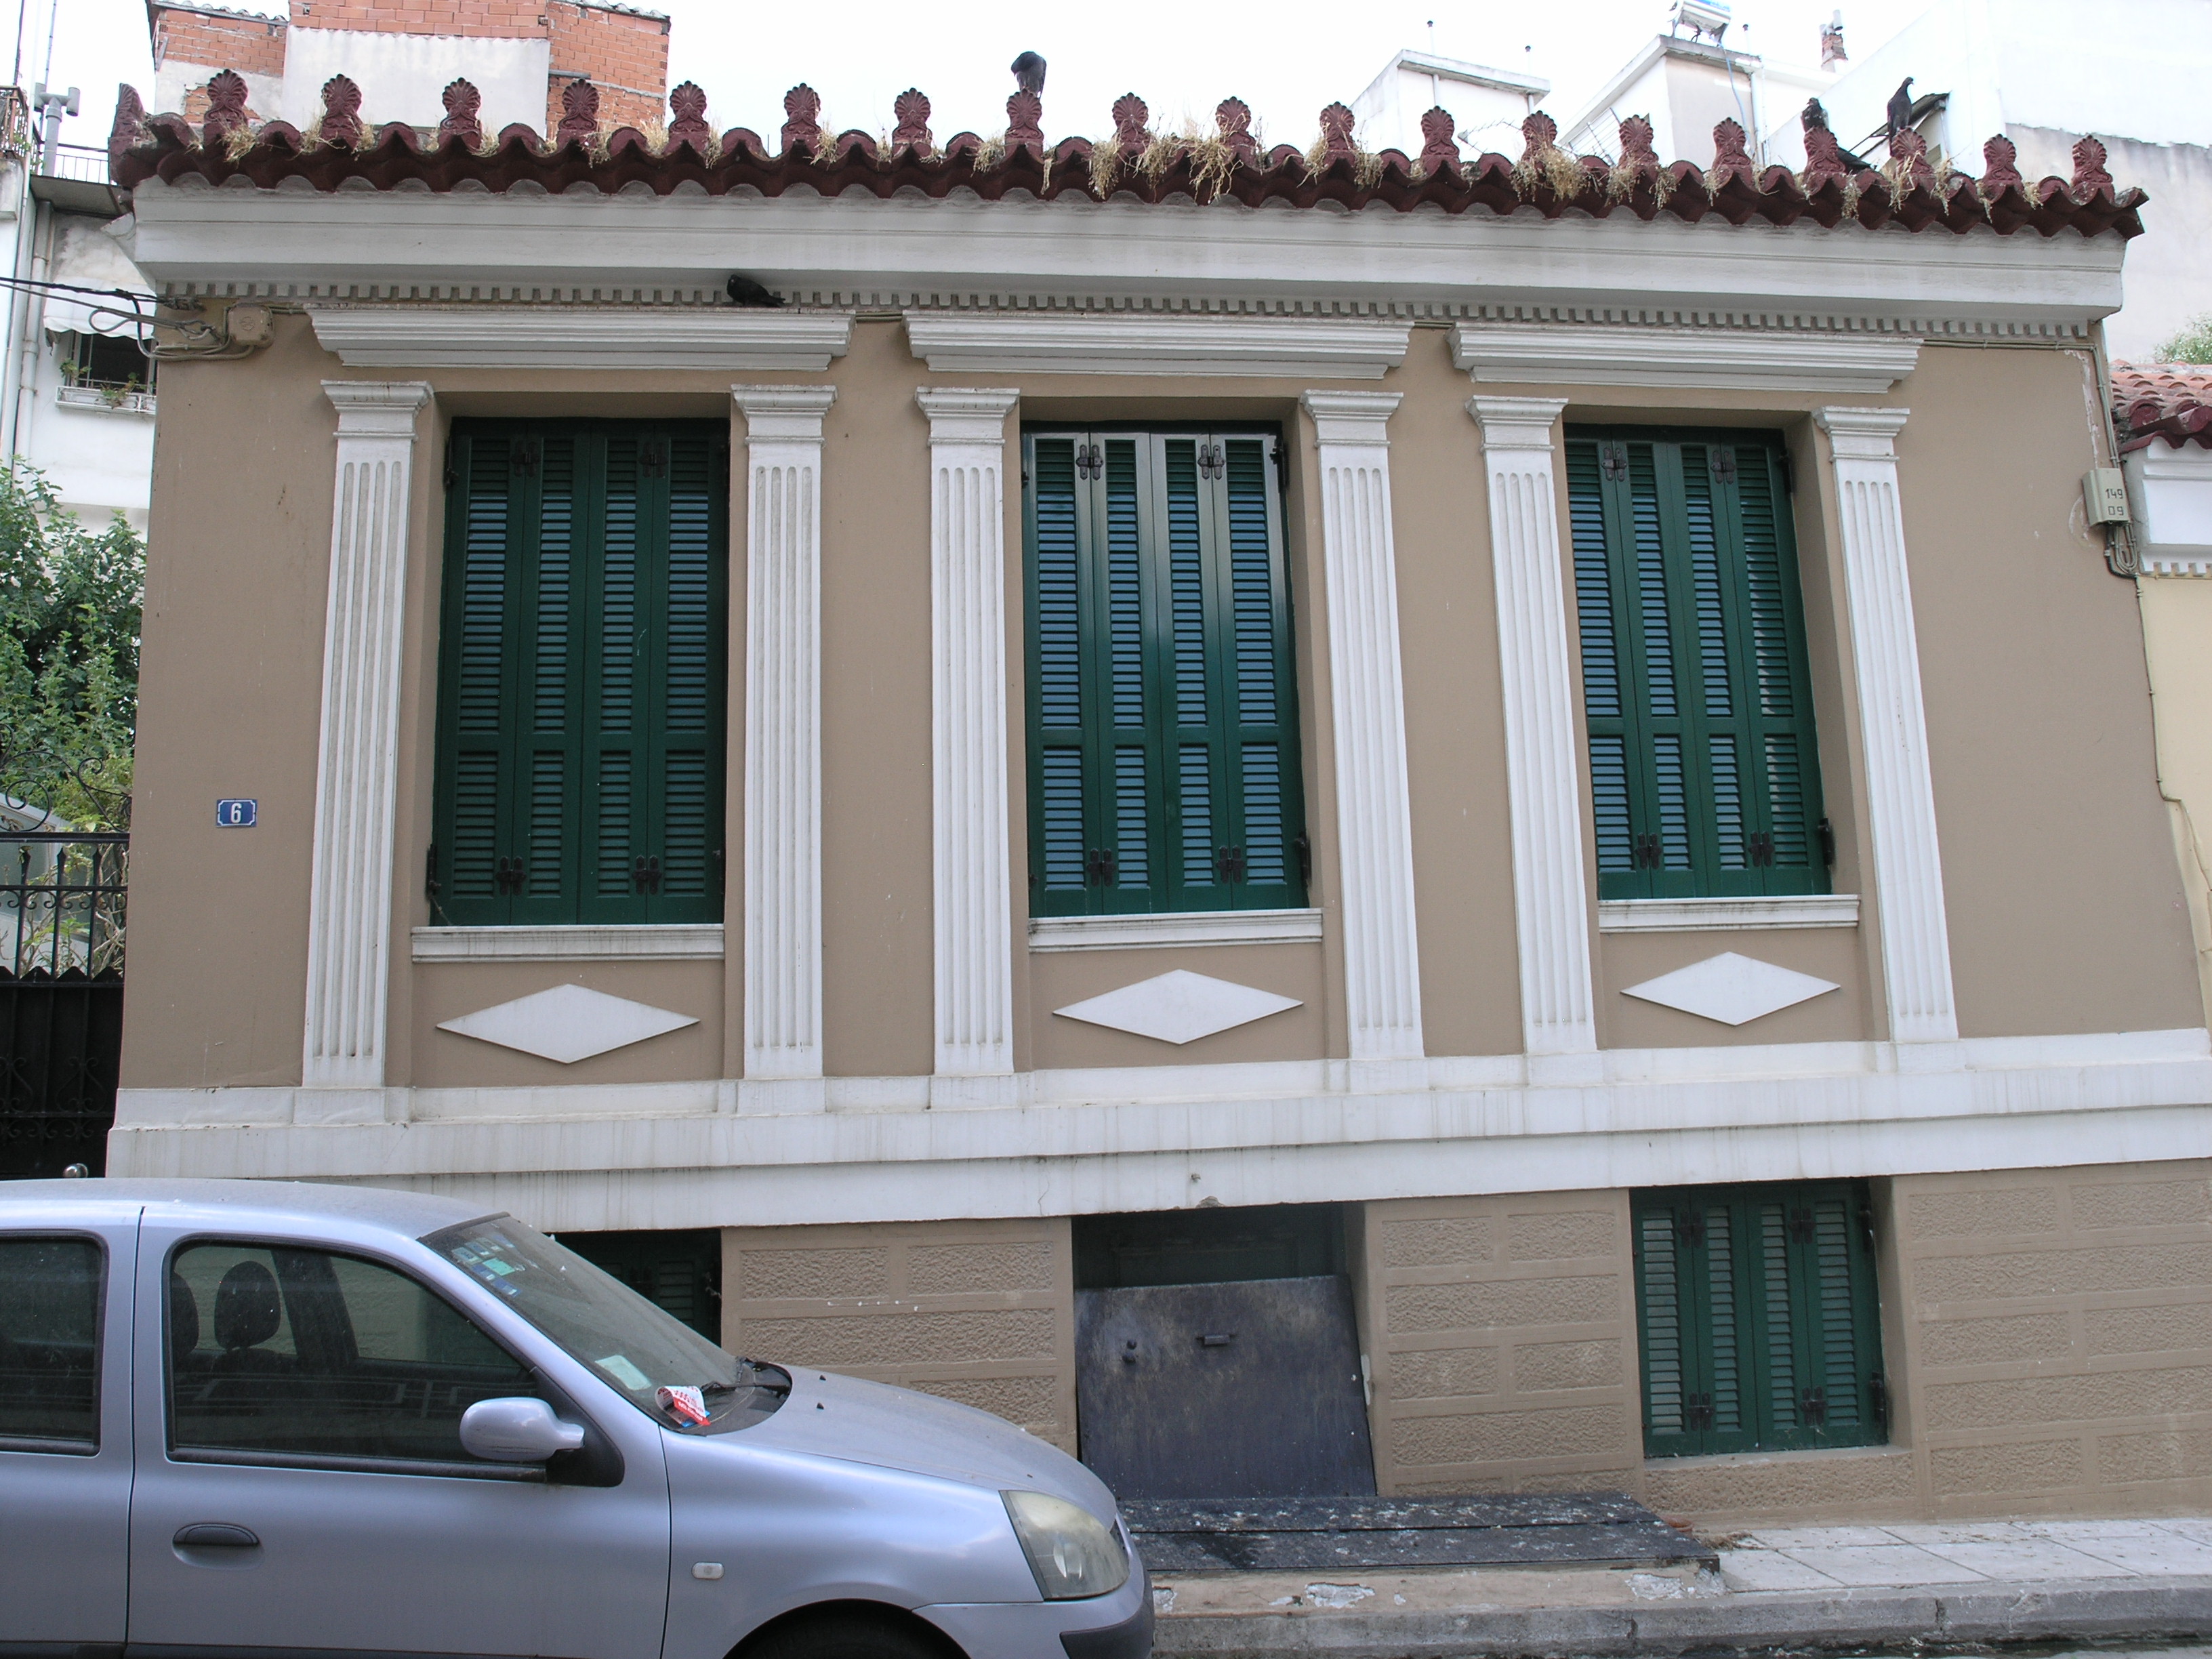 View of the main facade